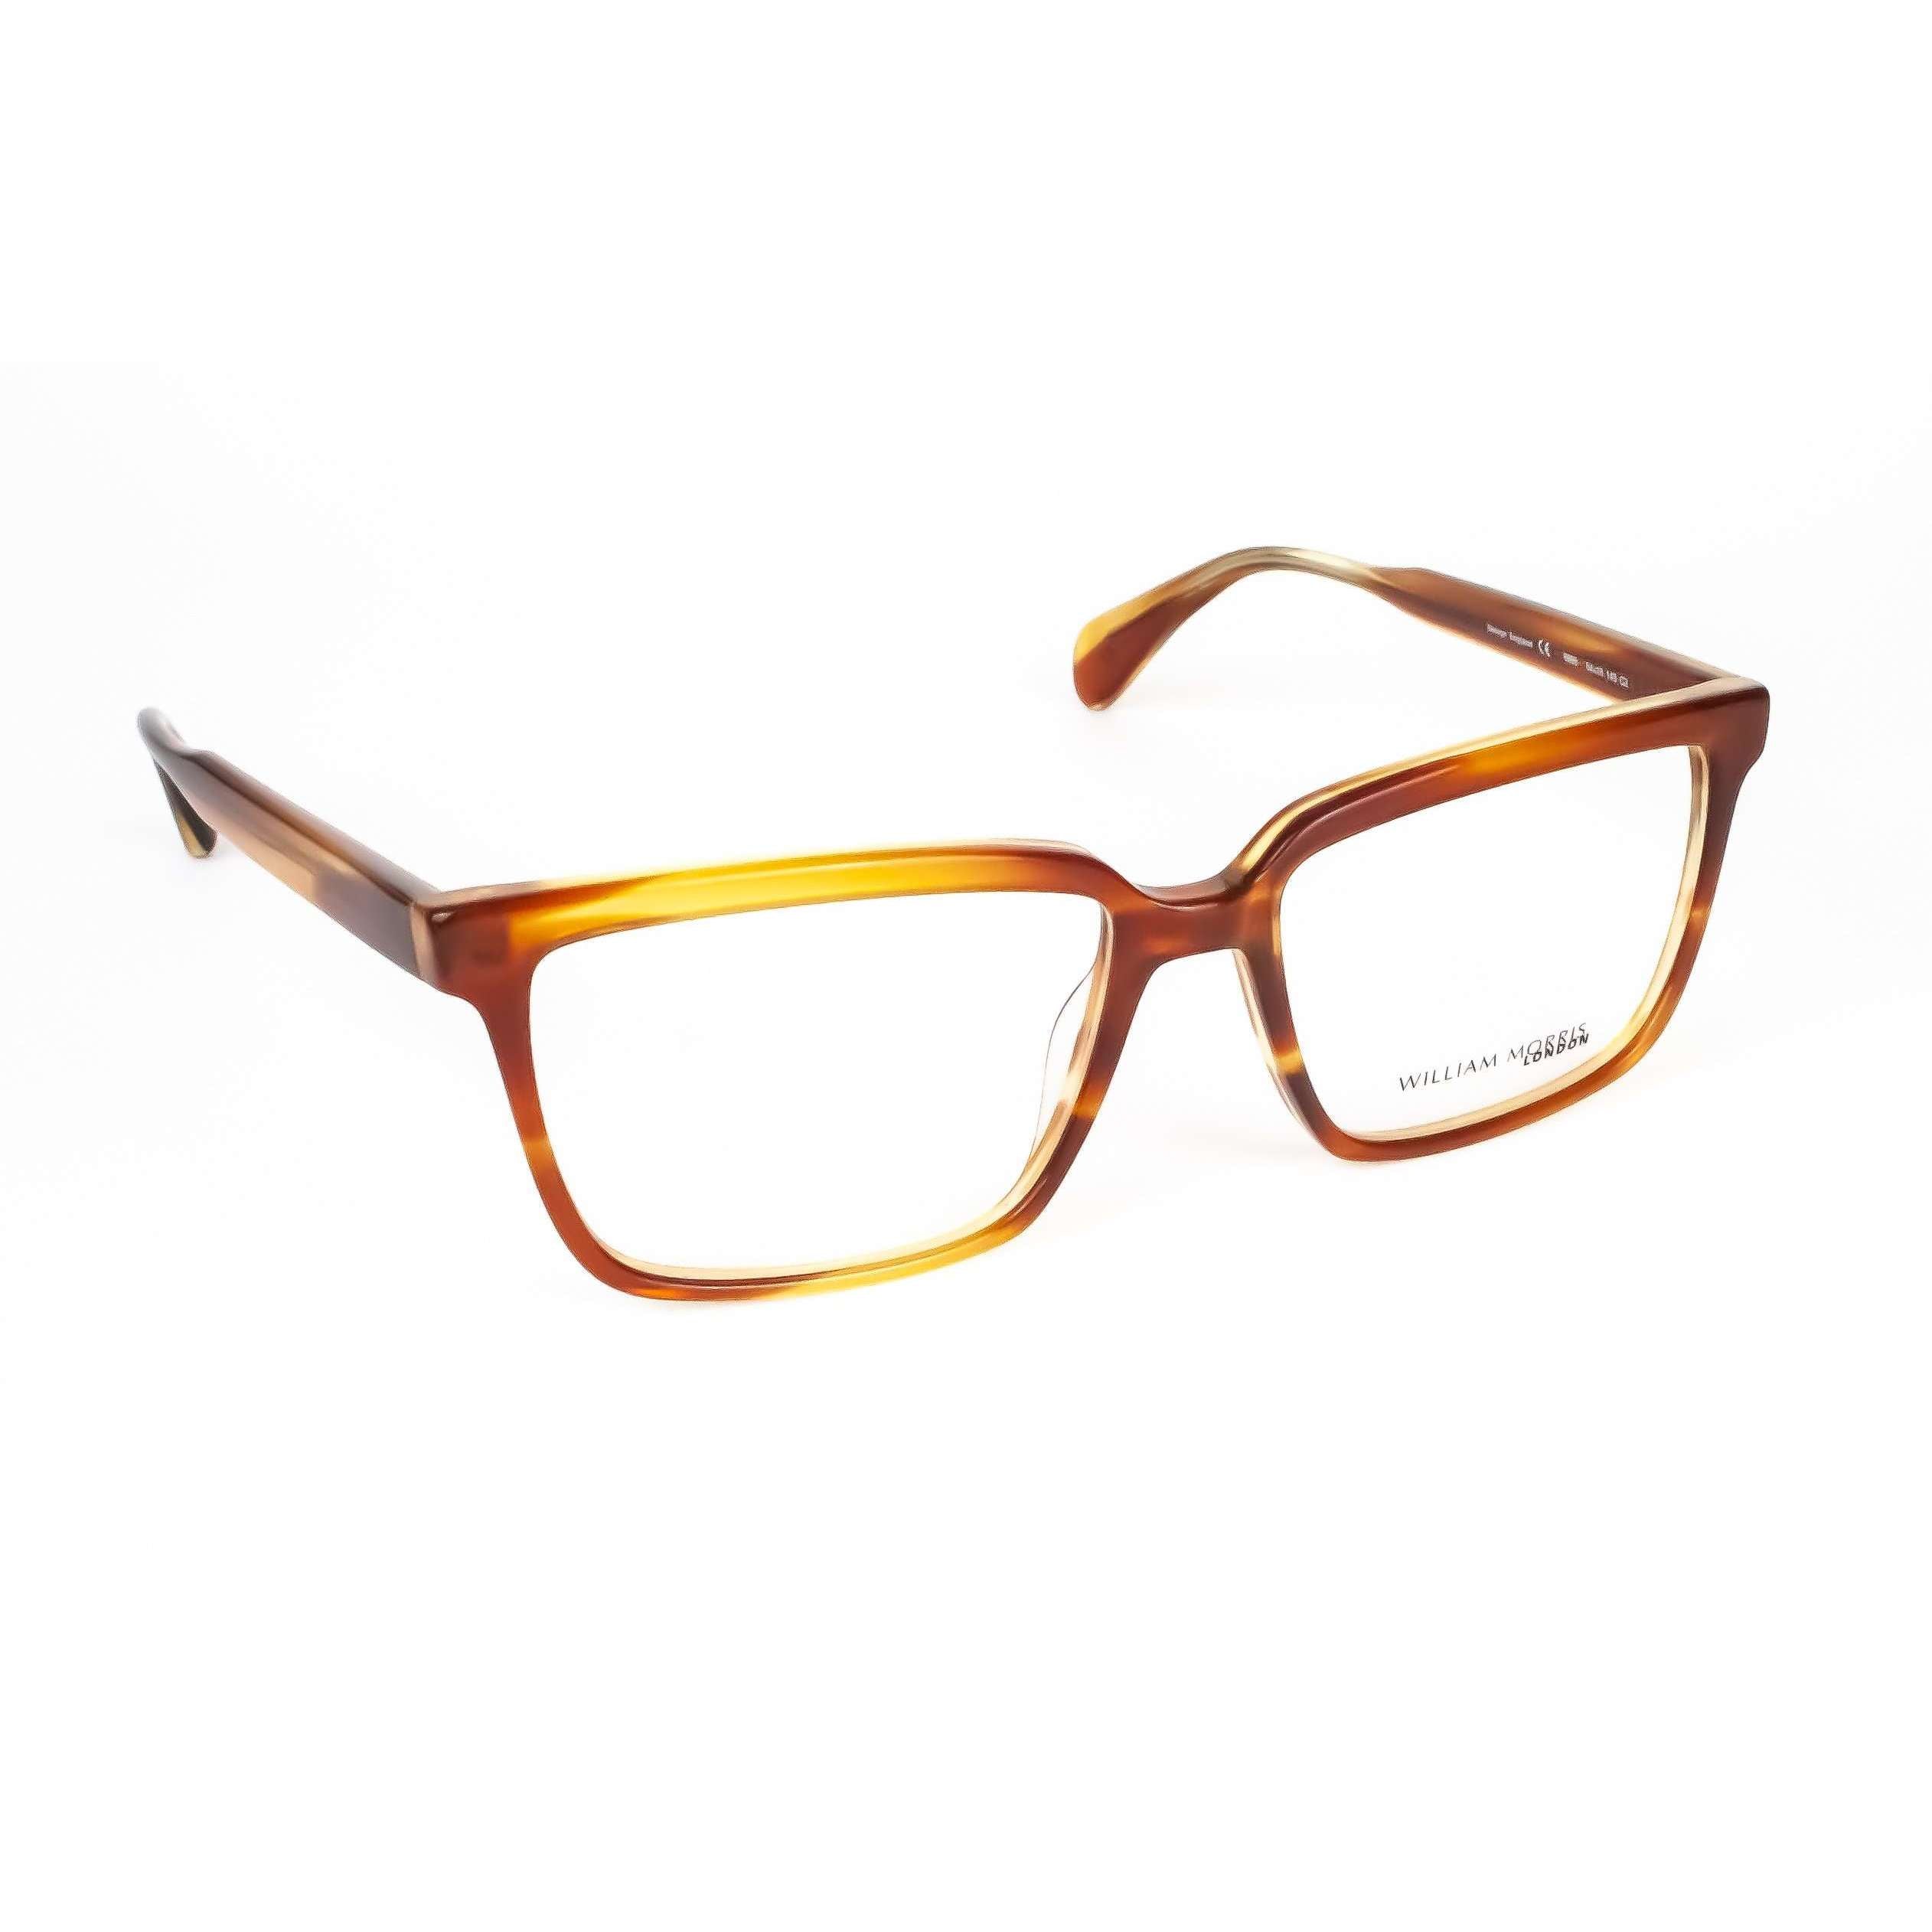 William Morris London Model 6995 Brown Tortoiseshell Glasses